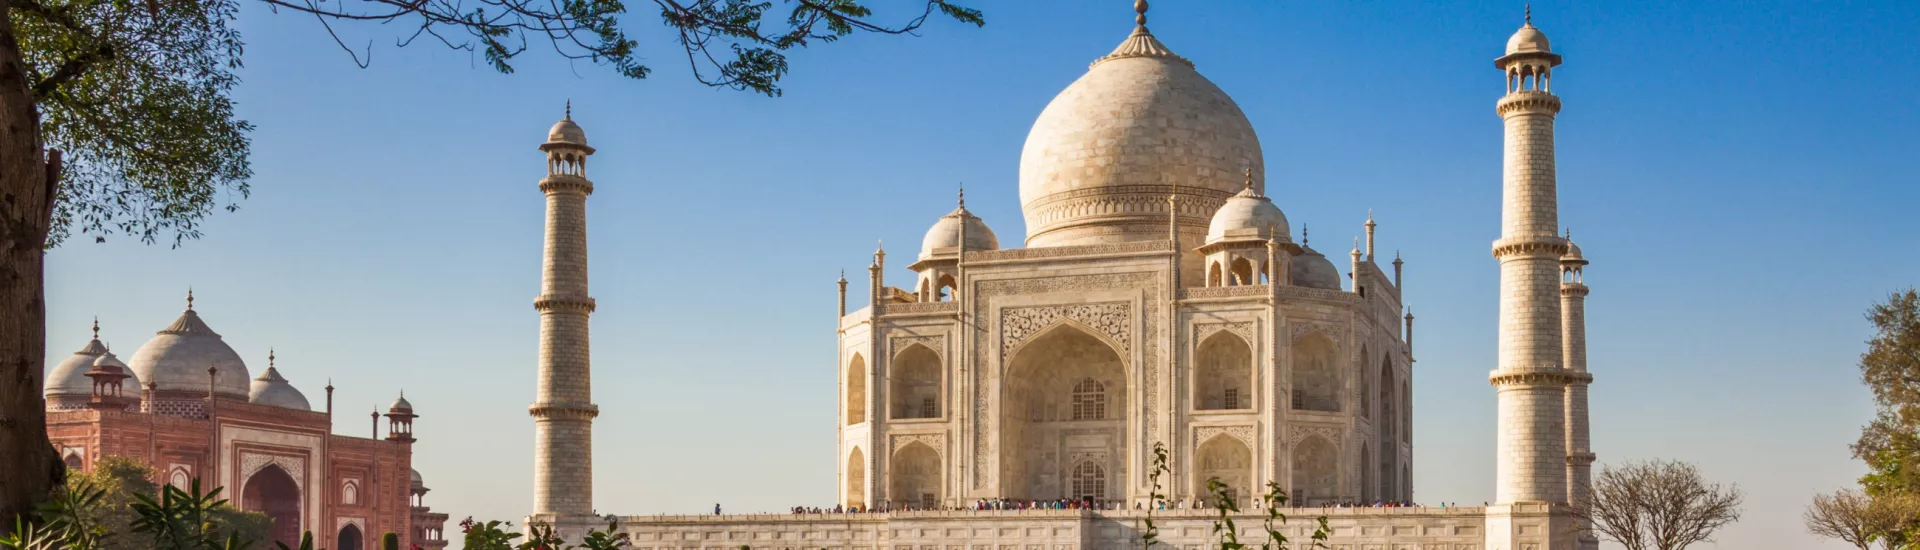 Das Taj Mahal, das Mausoleum, die Moschee.